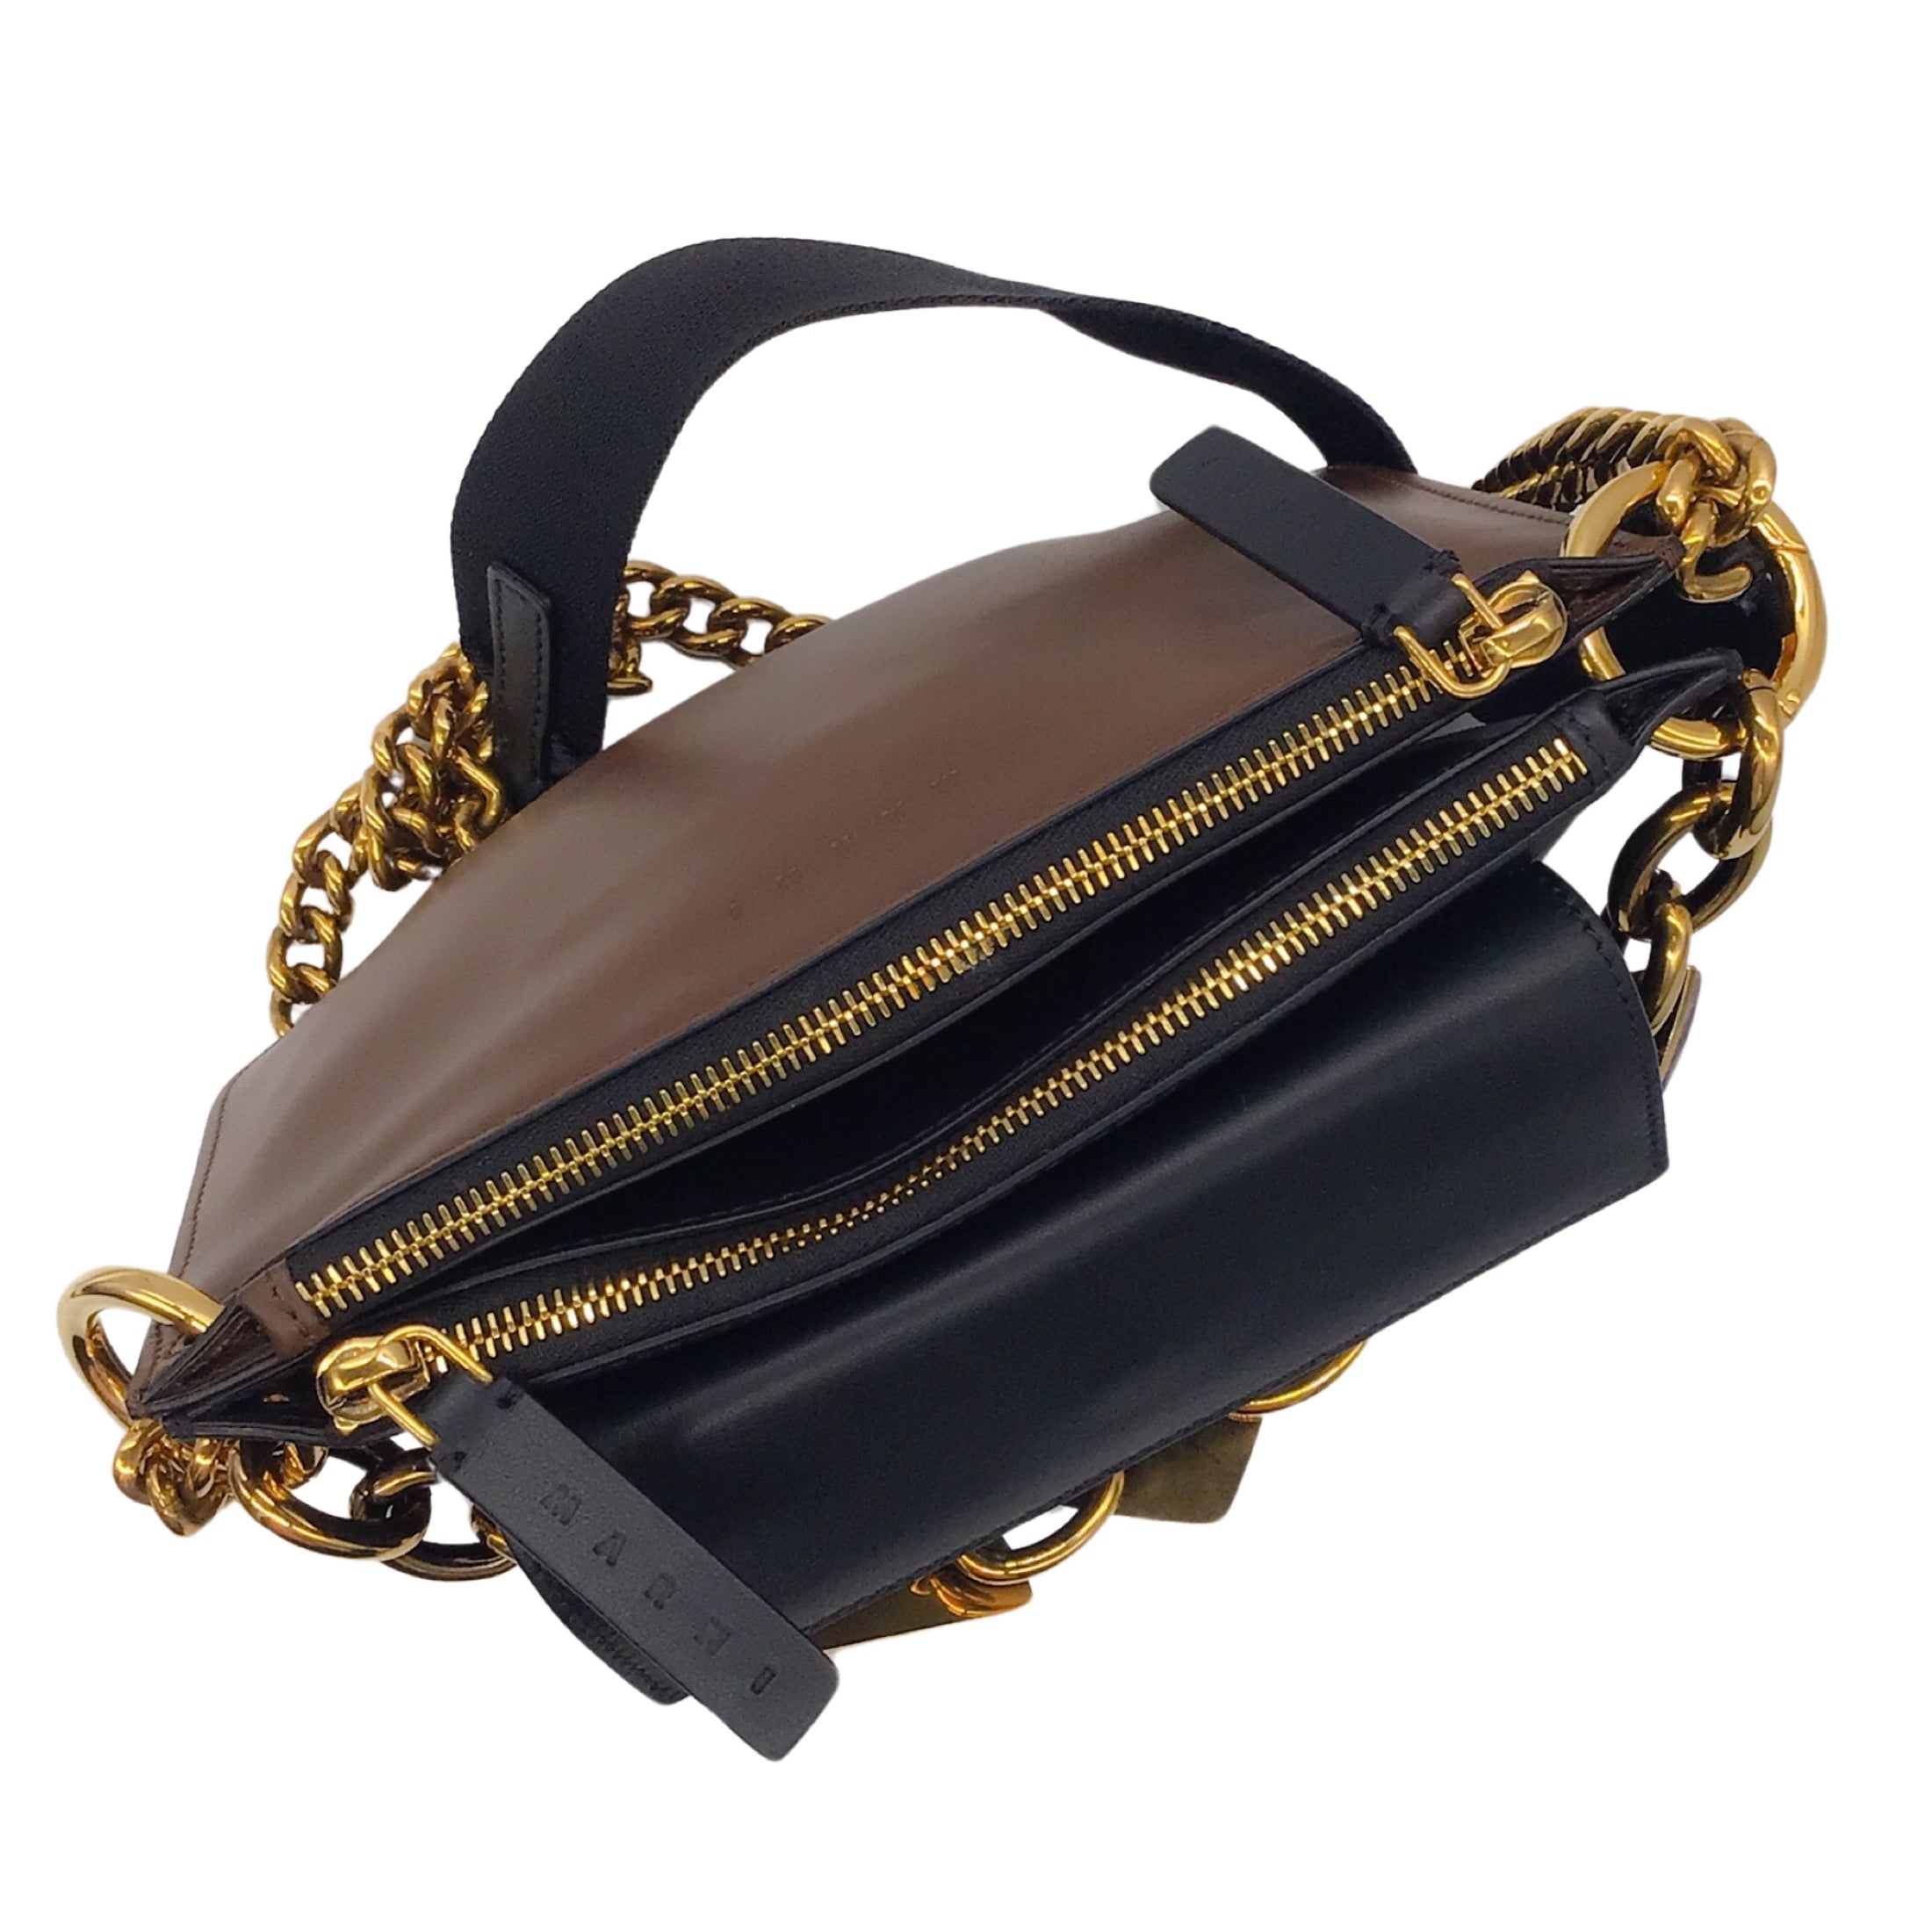 Marni Black / Brown / Gold Chain Strap Stone Embellished Leather Shoulder Bag